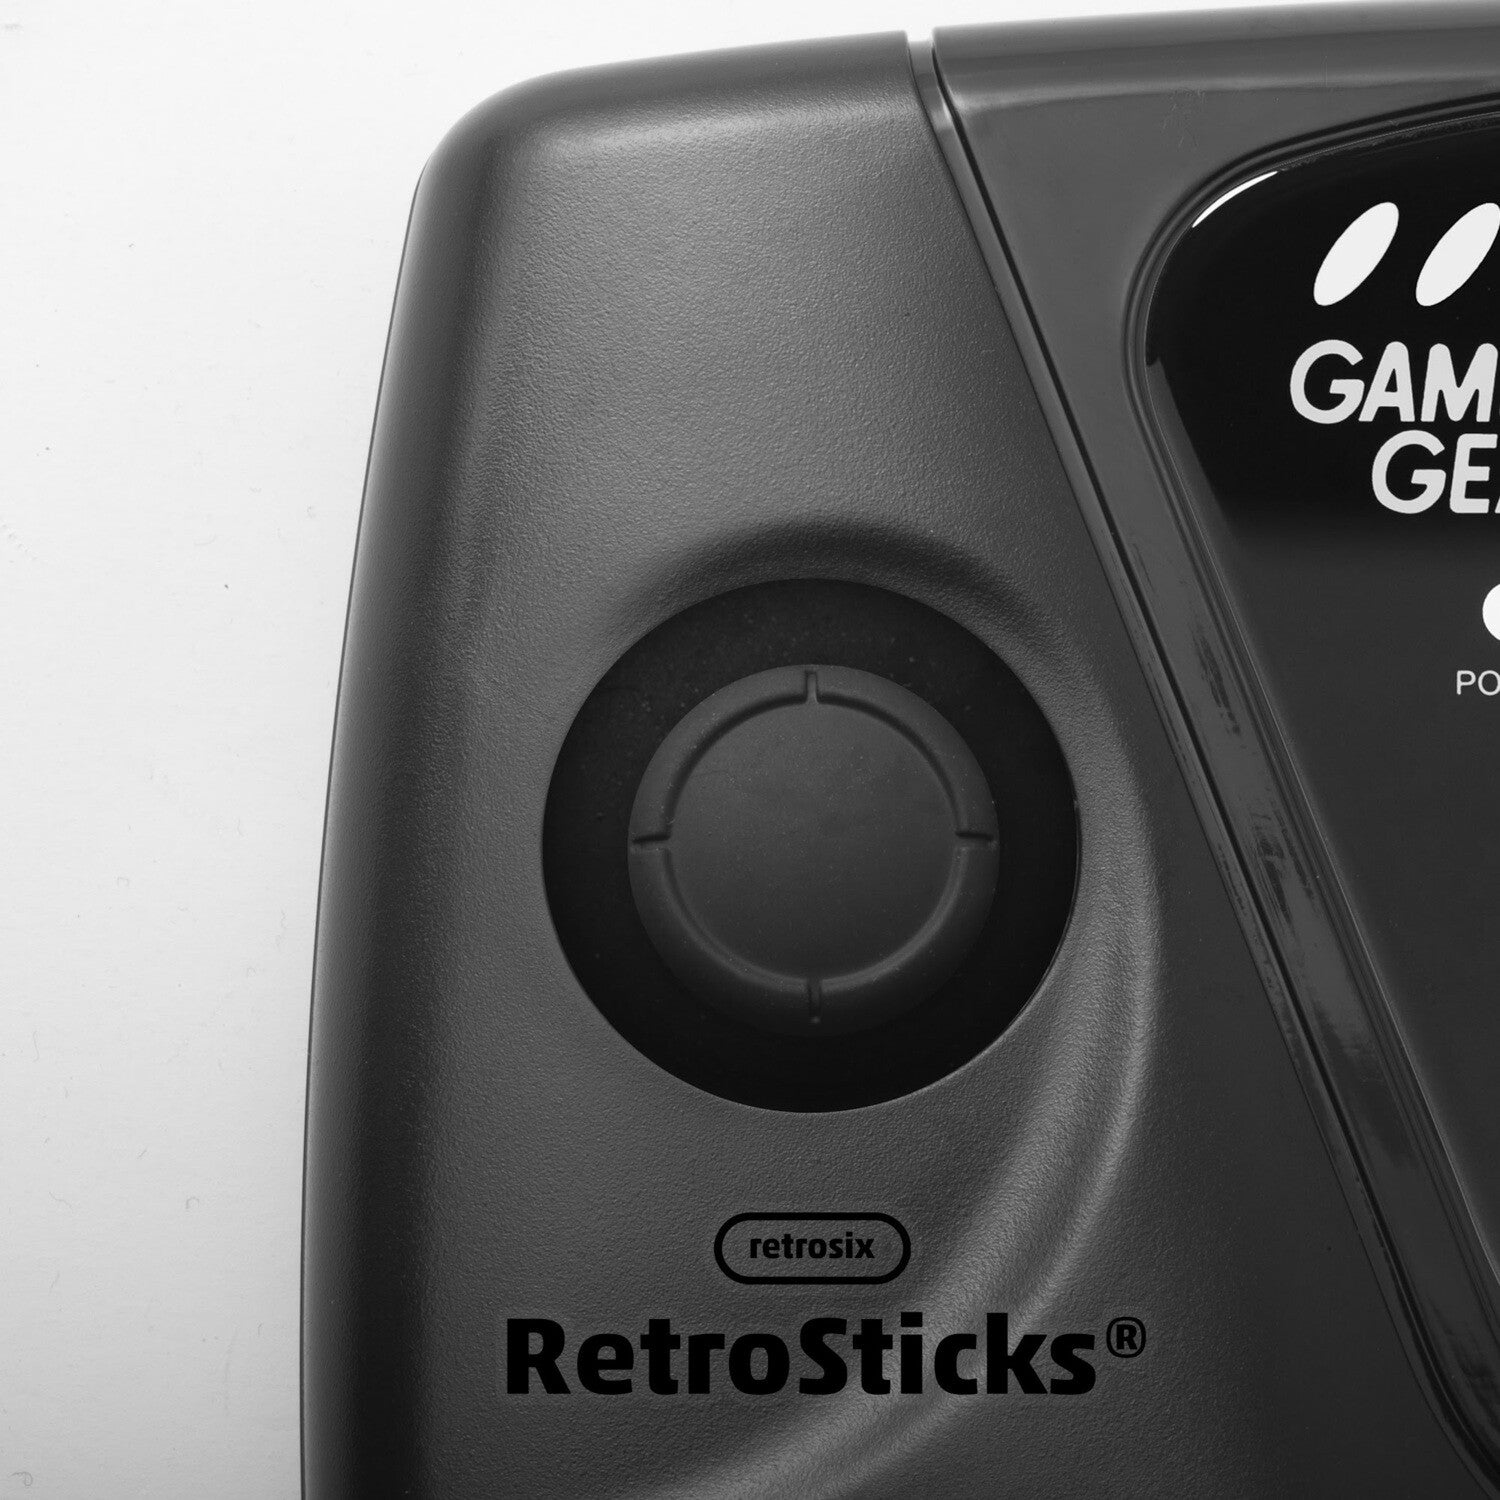 RetroSticks® for SEGA Game Gear RetroSix